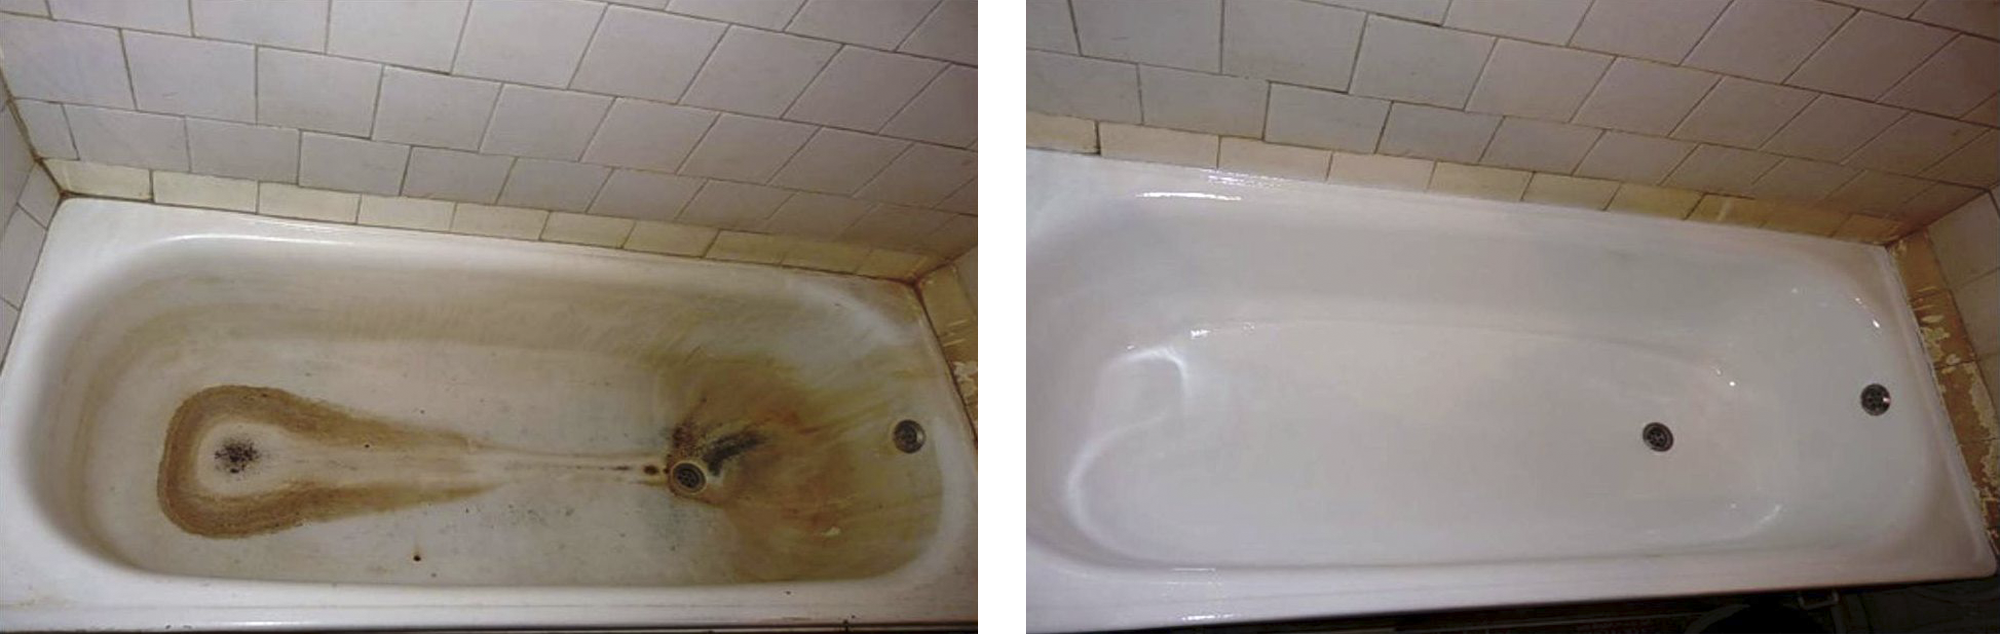 Эмаль или акрил: что лучше для реставрации старой ванны